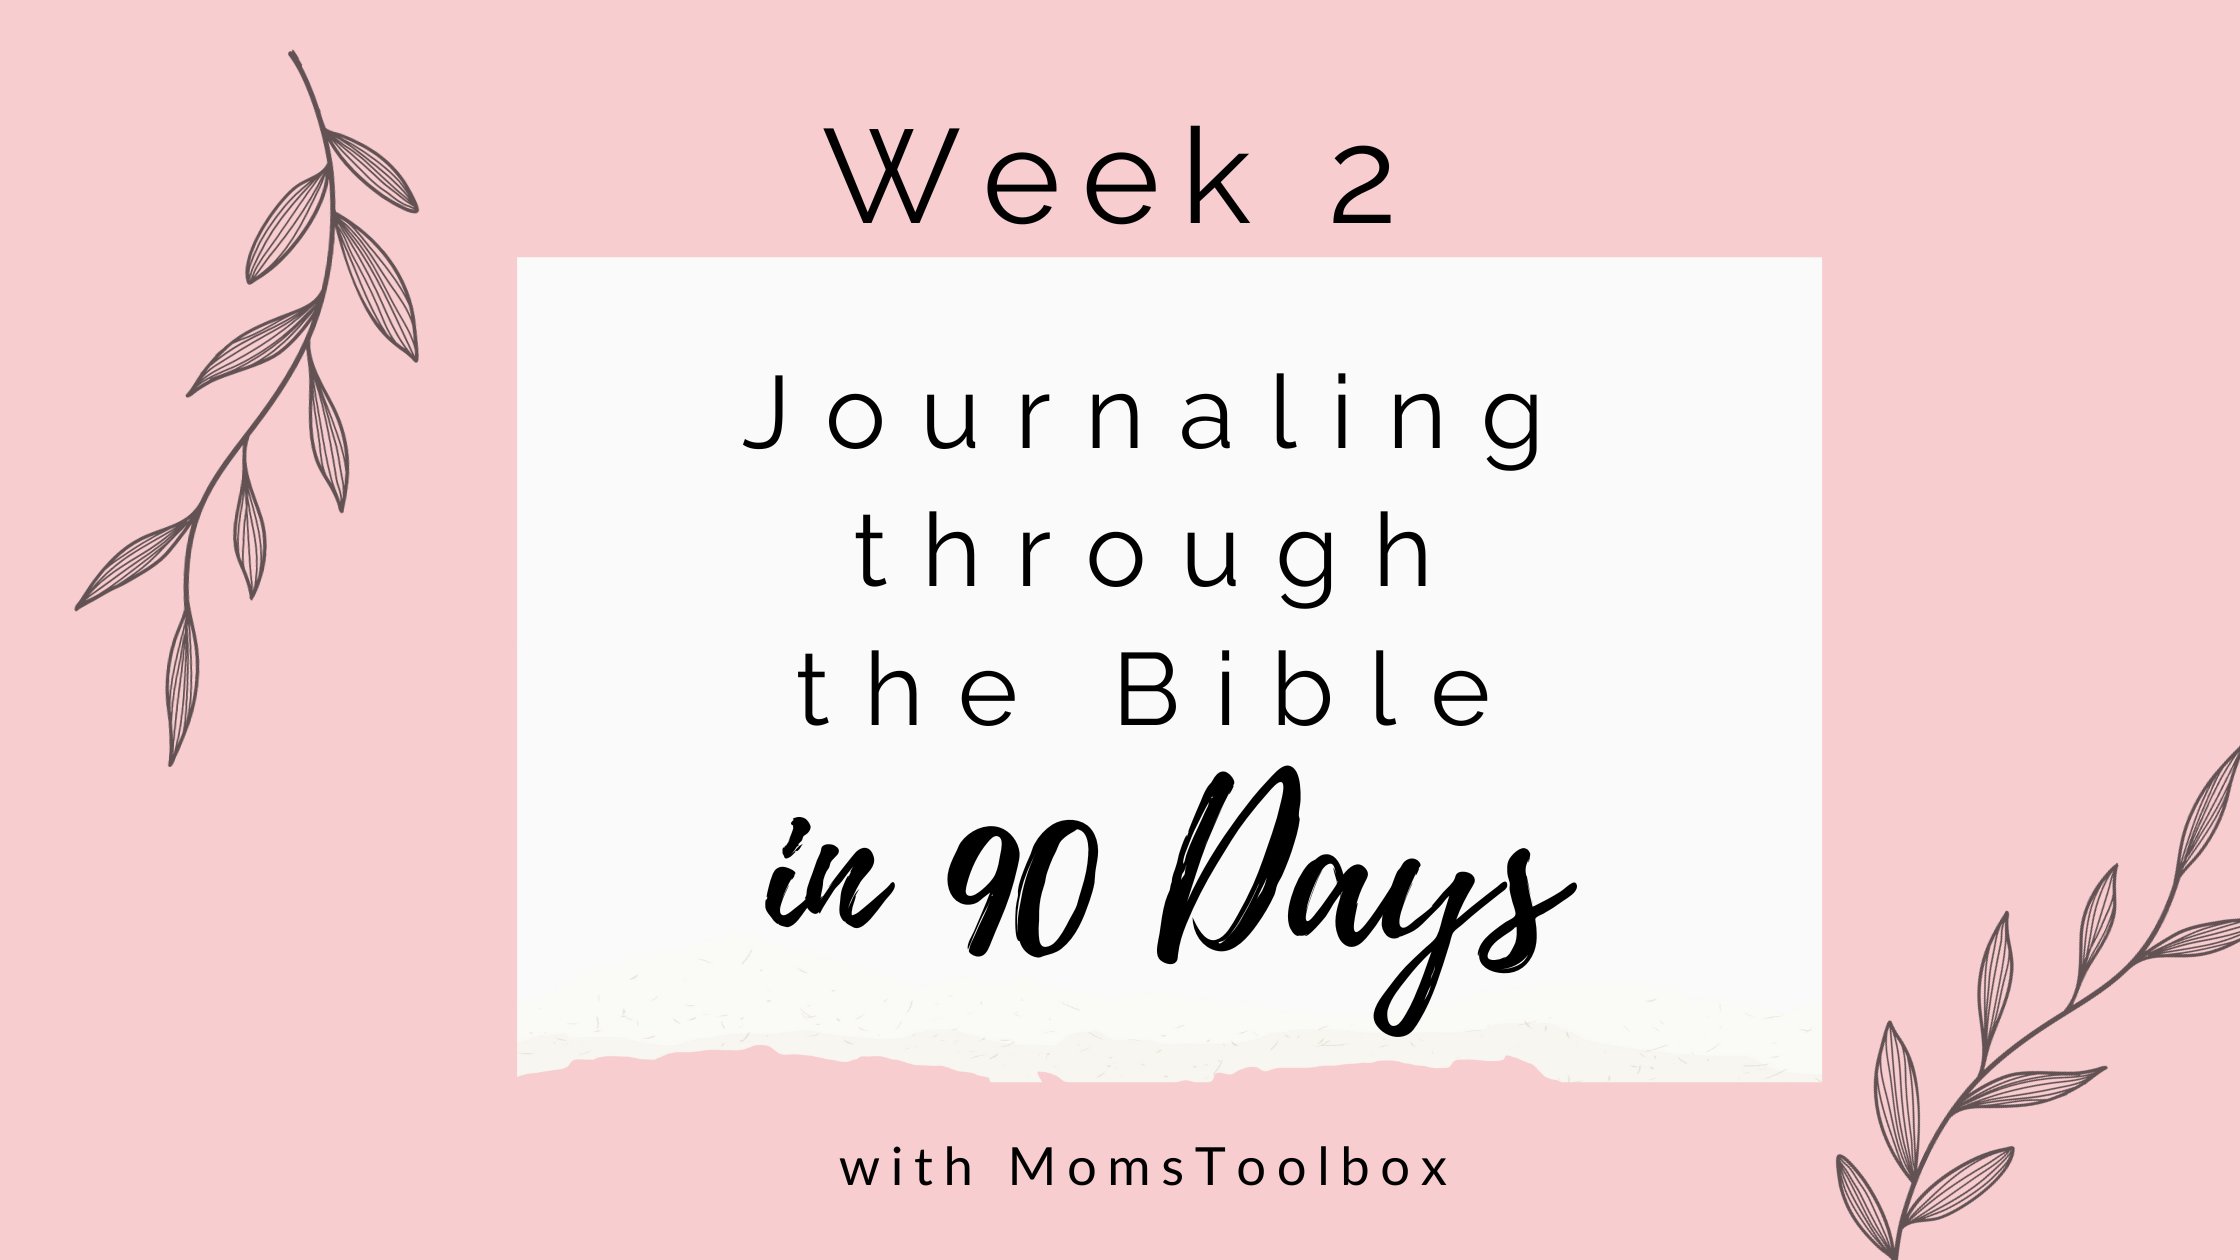 Journaling through the Bible in 90 days: Week 2